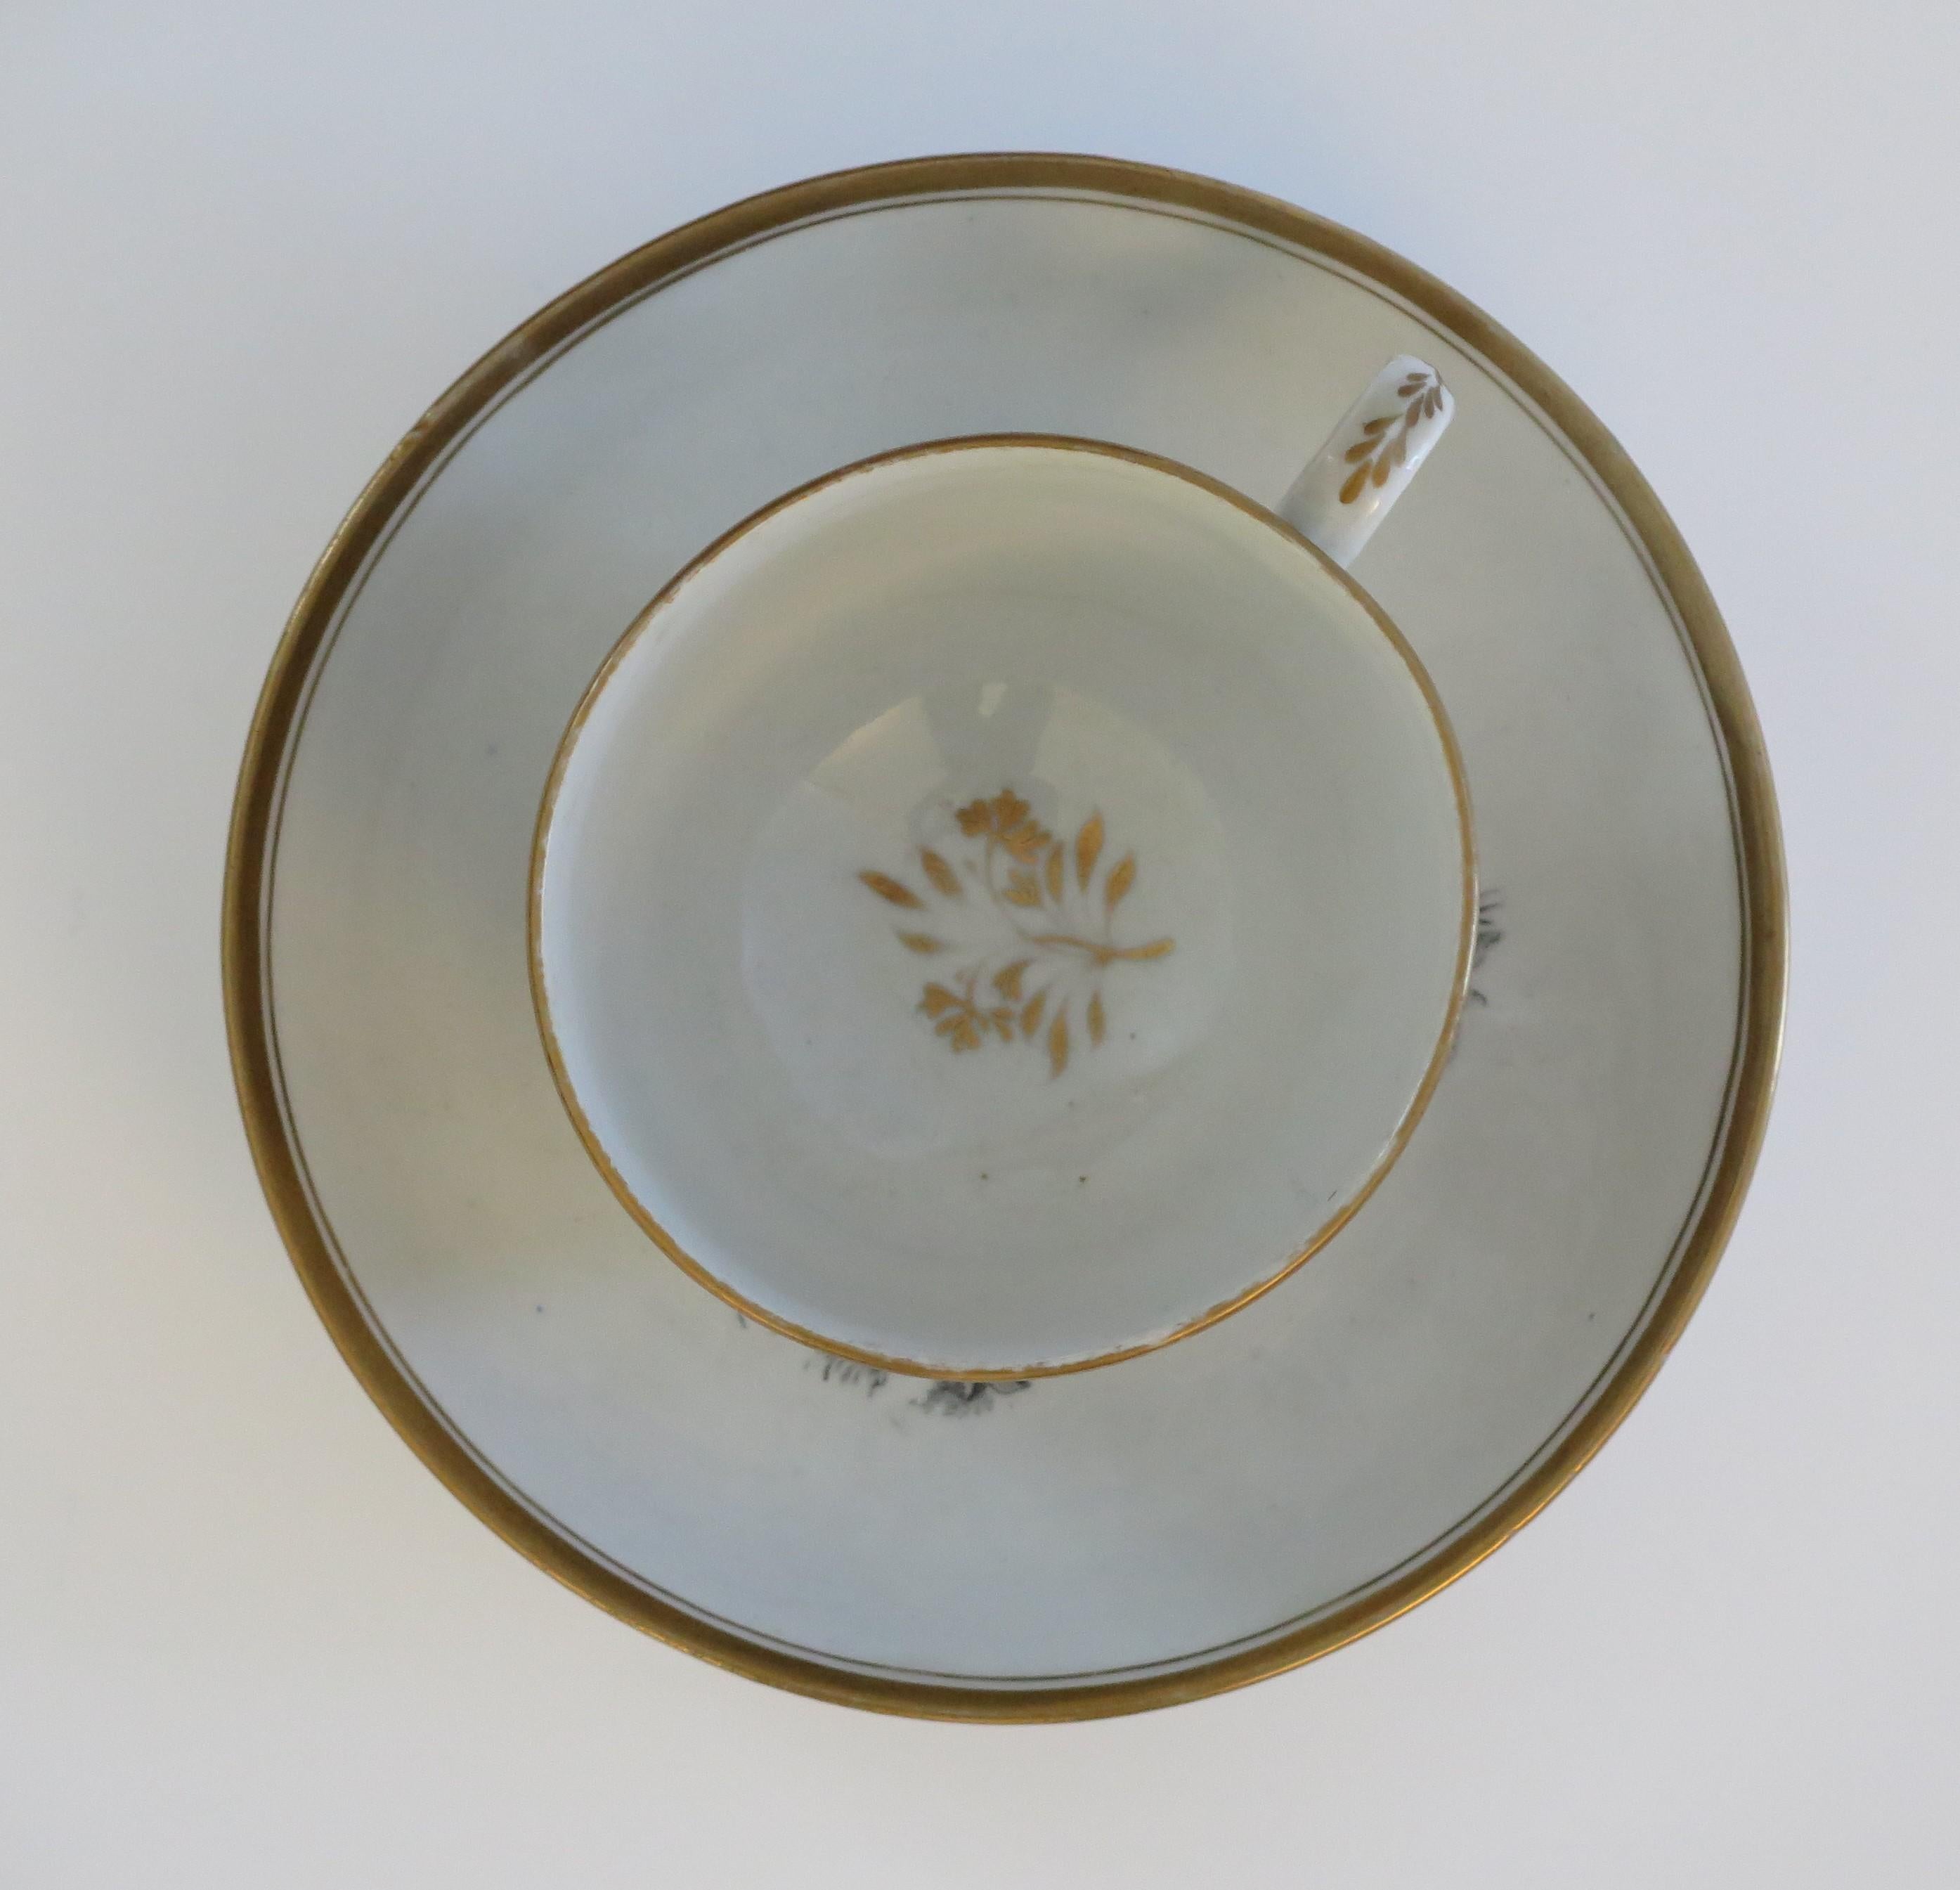 Il s'agit d'une tasse et d'une soucoupe à thé en porcelaine imprimée à la chauve-souris, par New Hall, datant du début du XIXe siècle, période George 111, vers 1805.

Les deux pièces sont bien empotées, la tasse reposant sur un pied bas avec une